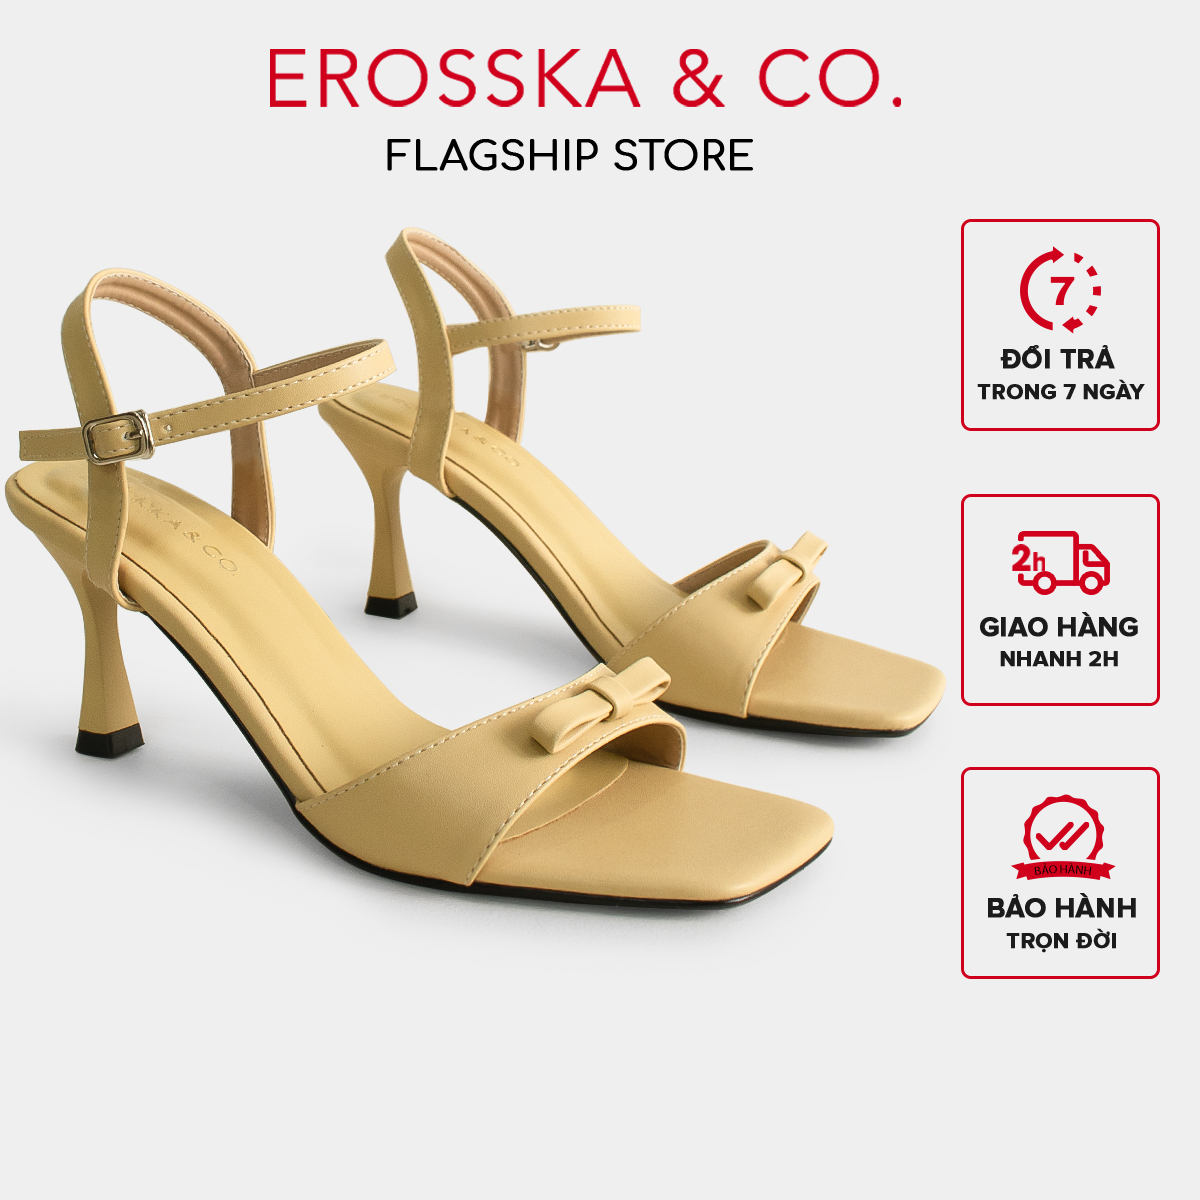 Erosska - Giày sandal cao gót nhọn quai ngang phối nơ thời trang công sở cao 7cm - EB056